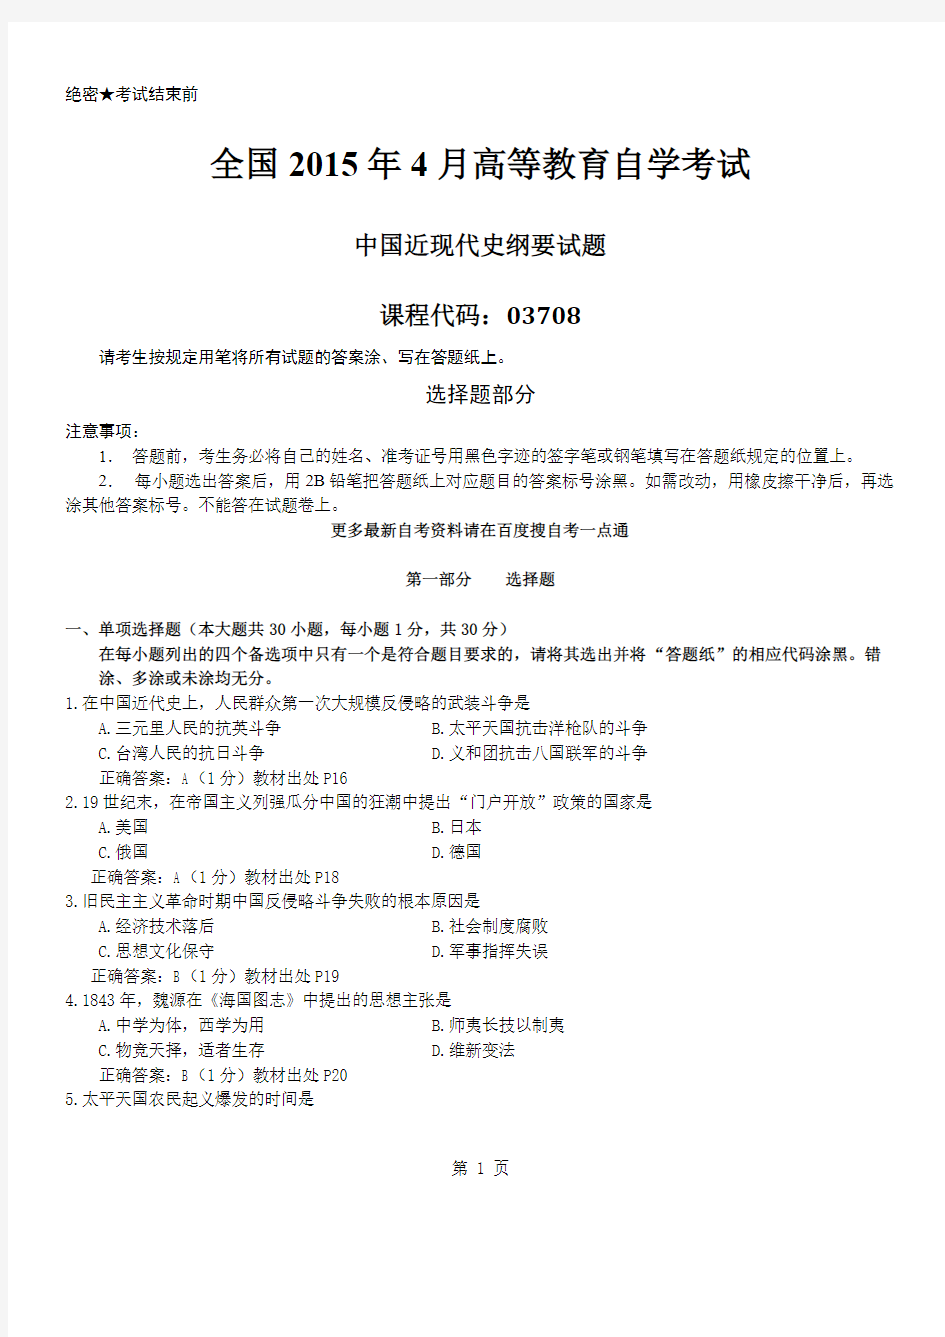 答案版2015年04月自学考试03708《中国近现代史纲要》历年真题及答案-推荐下载